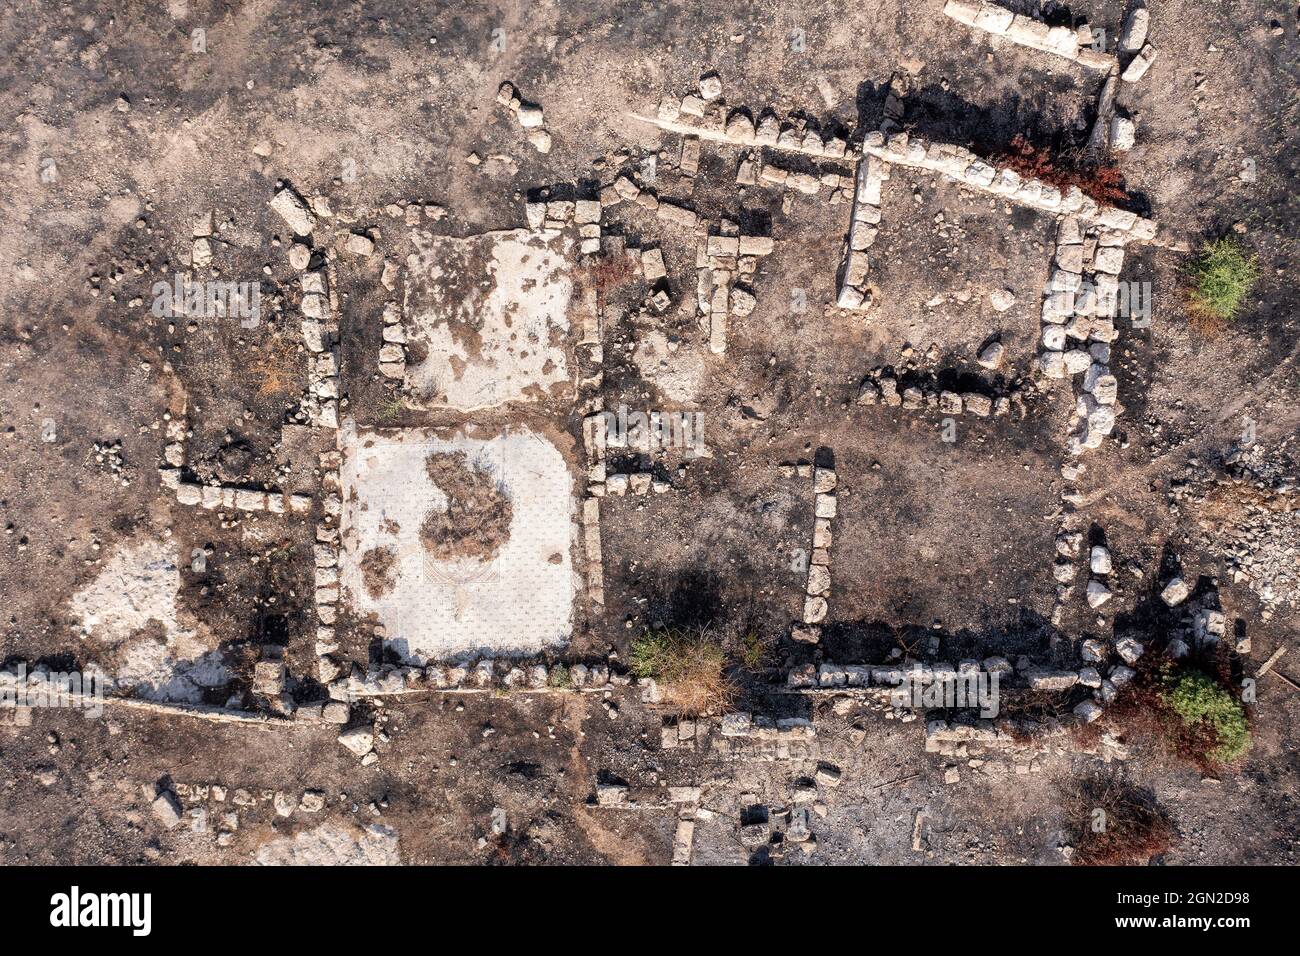 Tel Shikmona antigua ruinas arqueológicas sitio, Vista aérea. Foto de stock